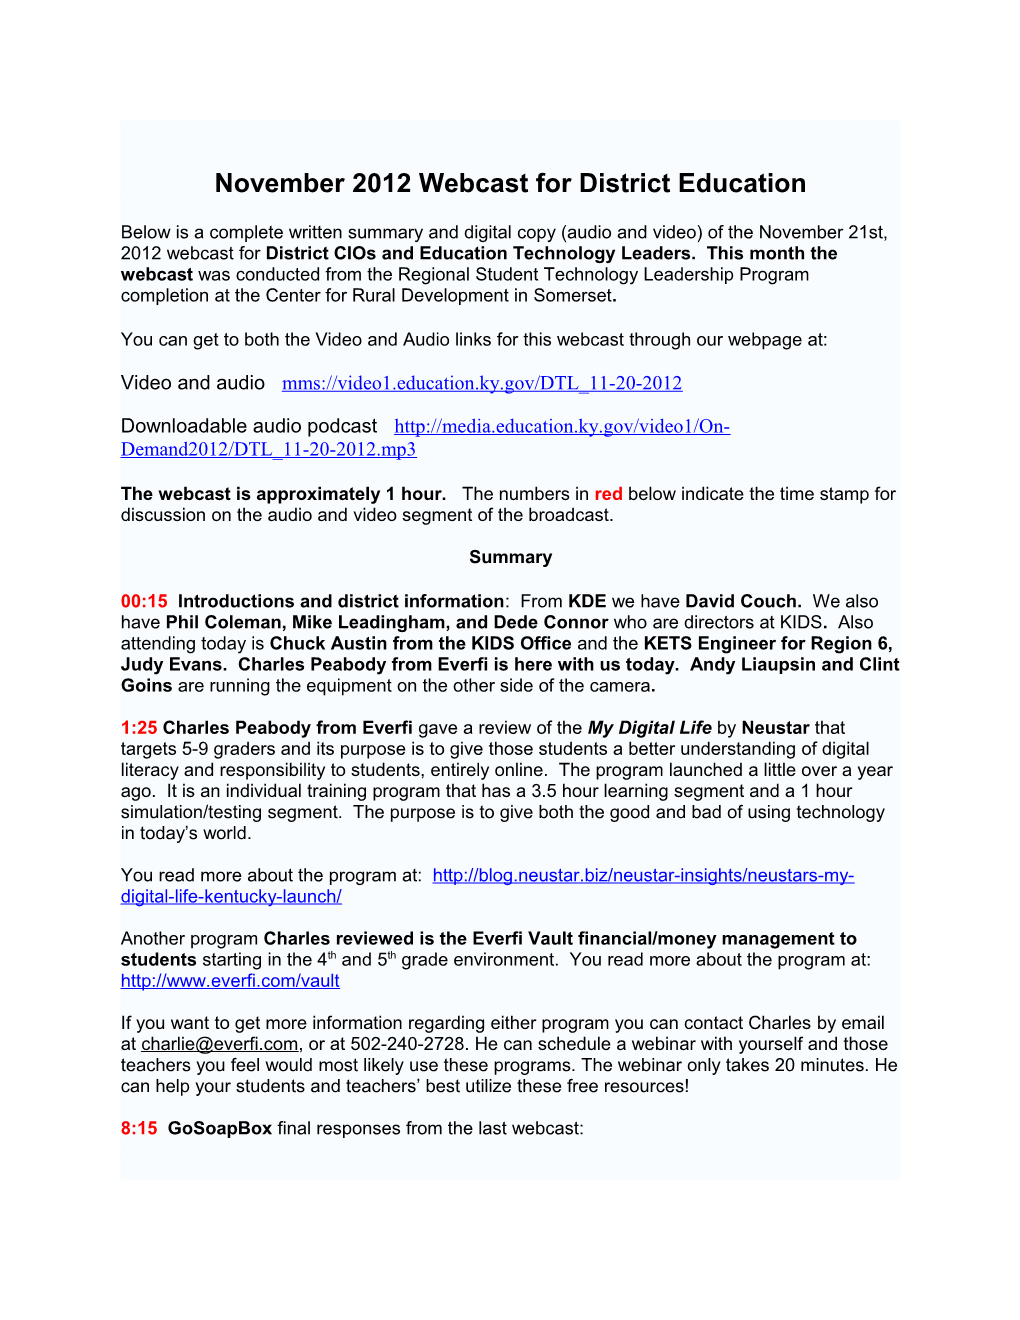 November 2012 Webcast Summary PDF